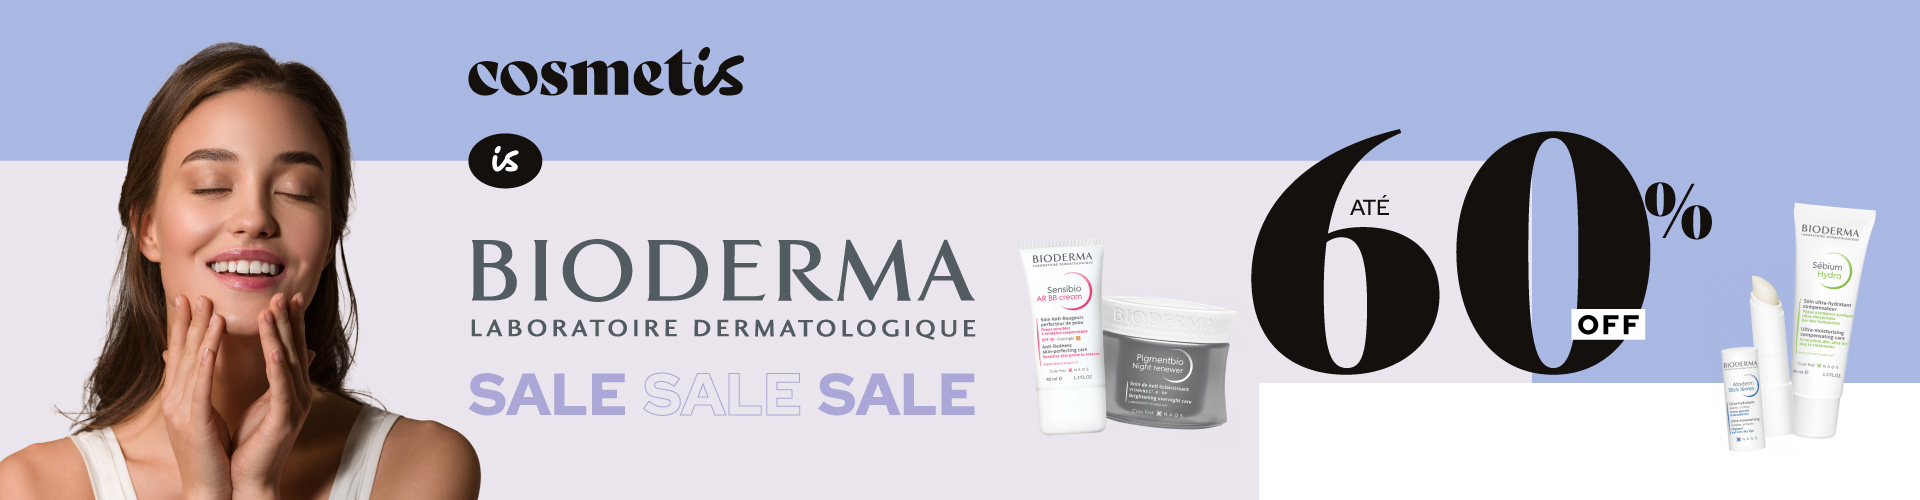 Cosmetis is Bioderma Sale